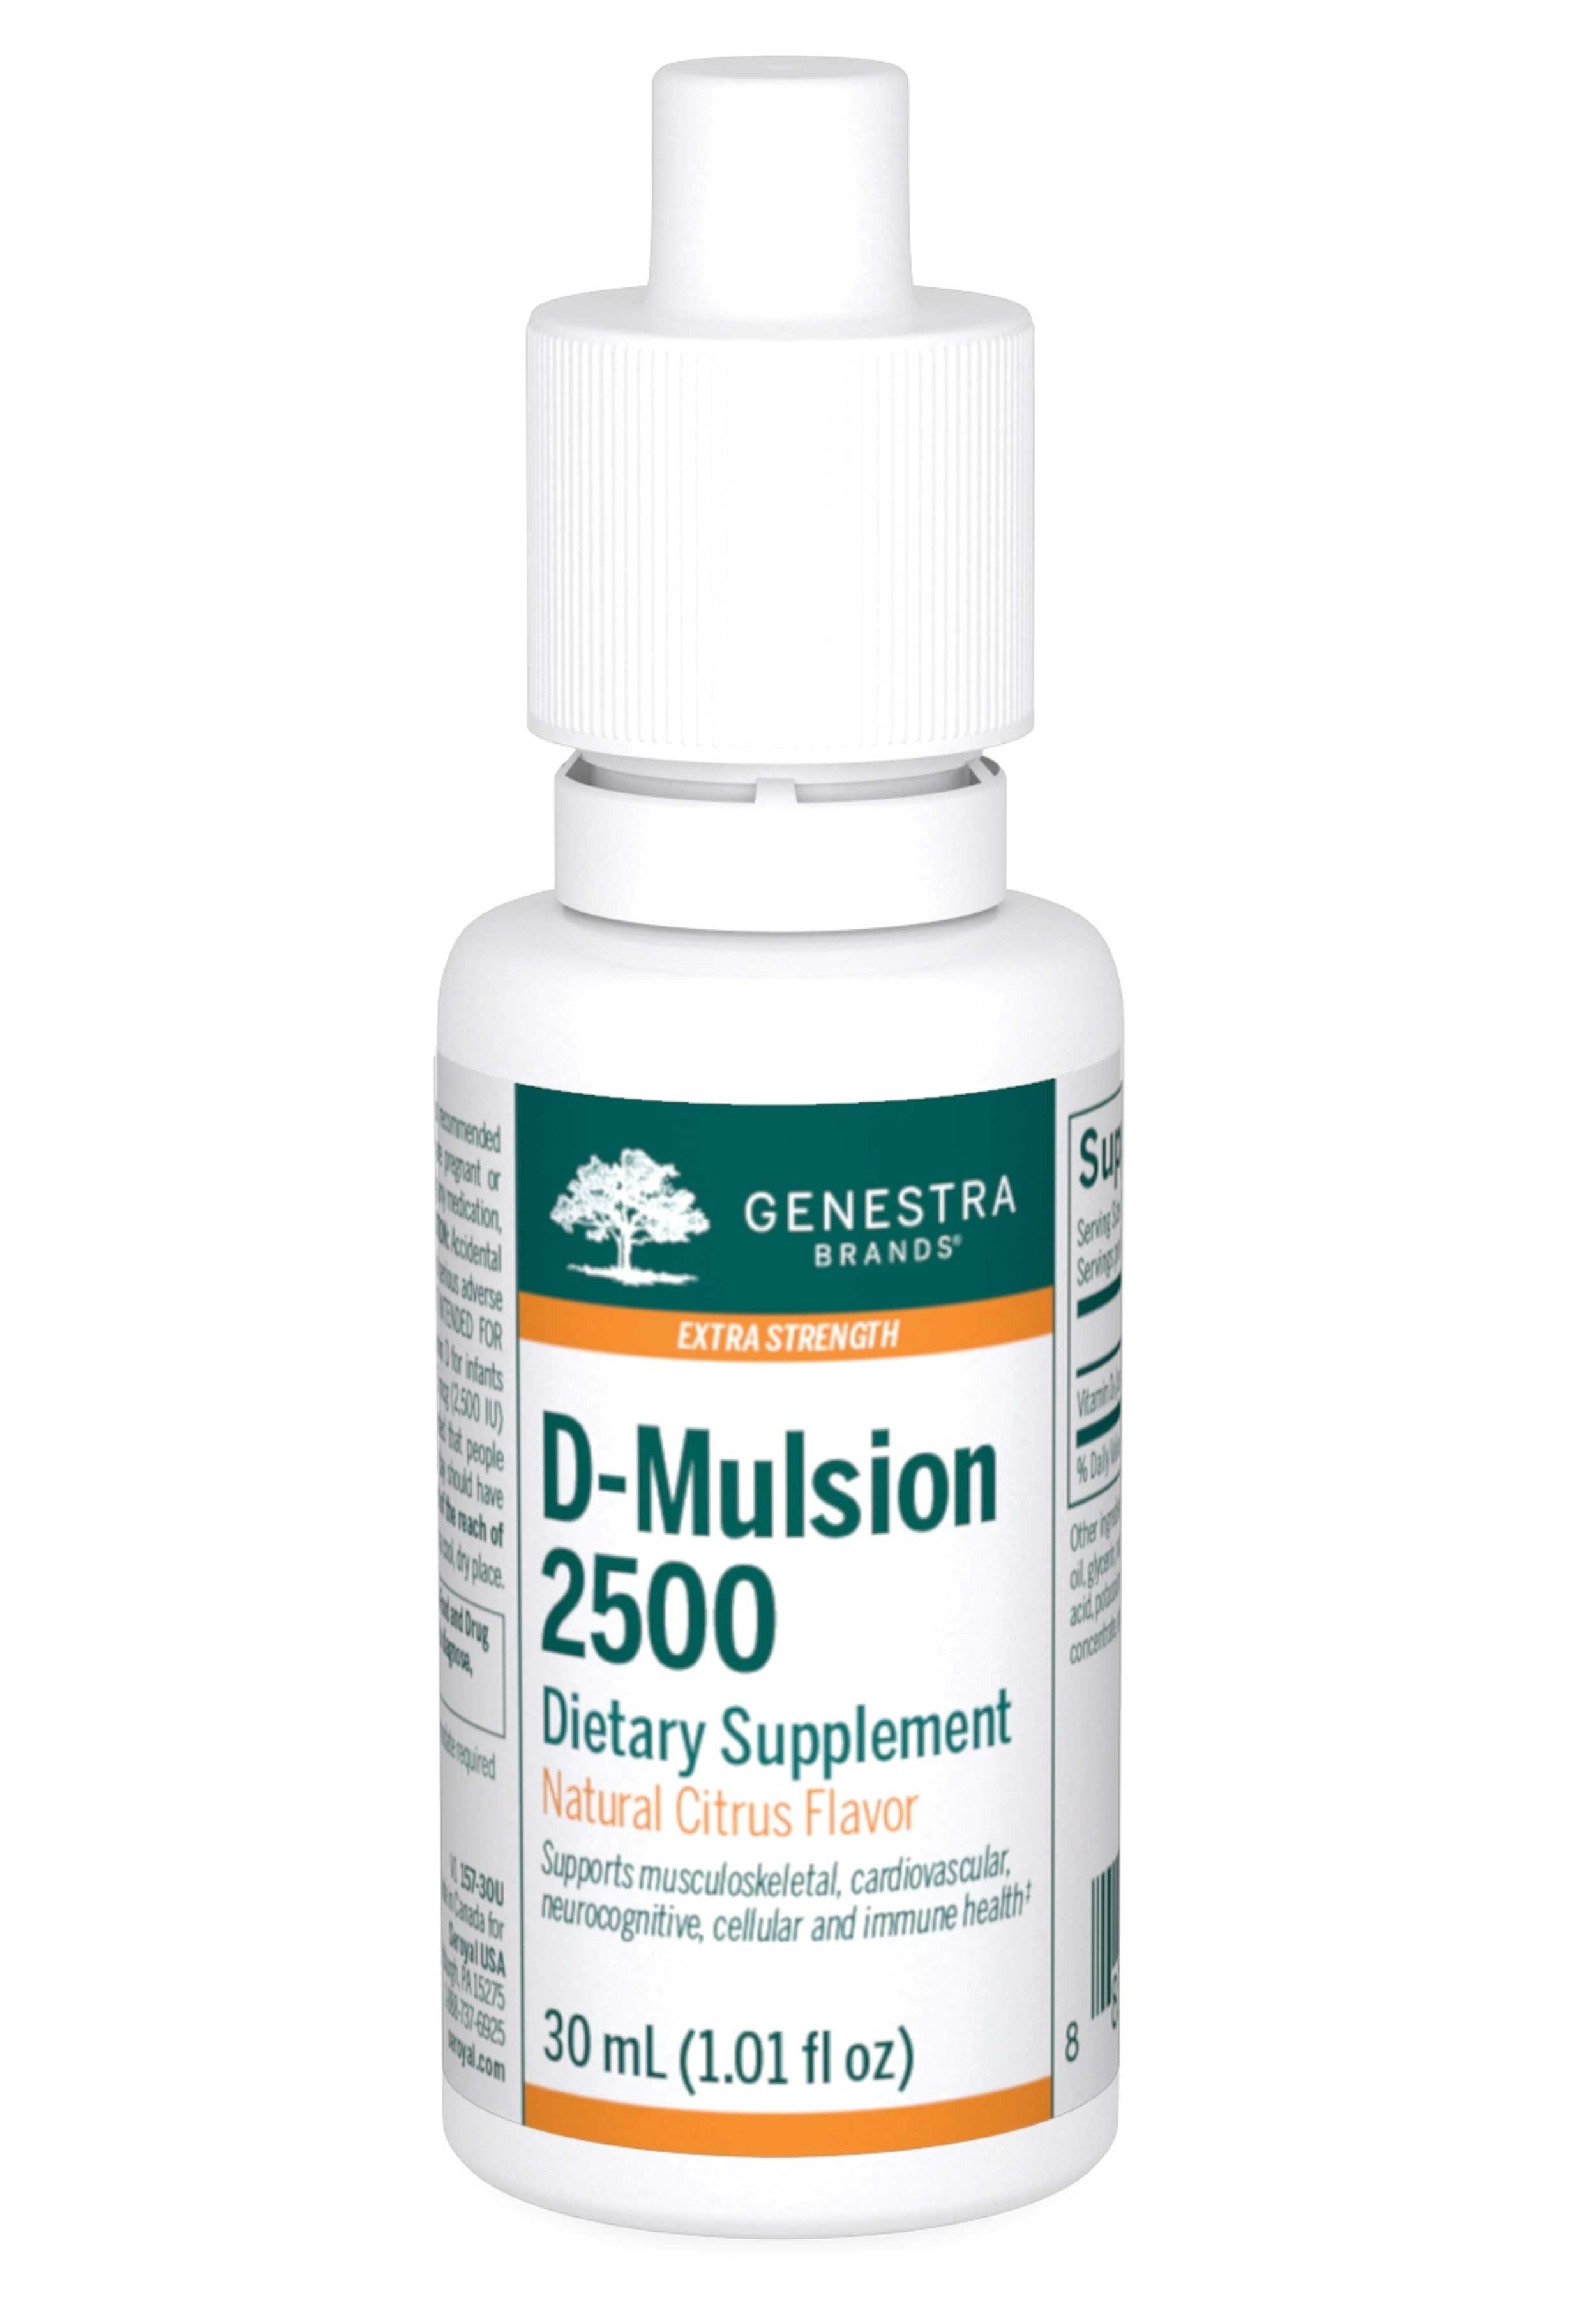 Genestra Brands D-Mulsion 2500